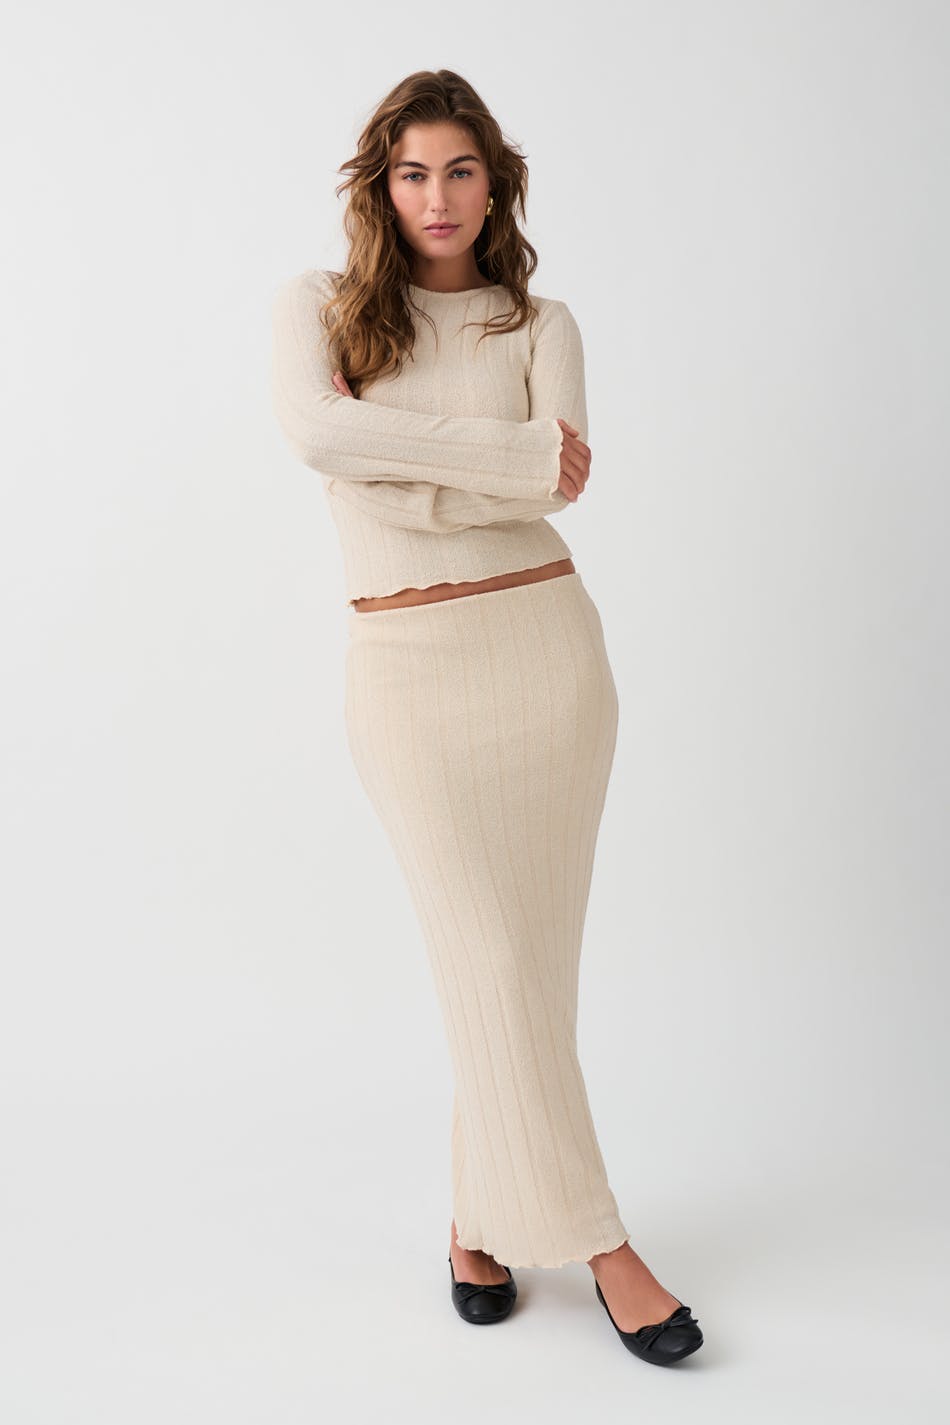 Gina Tricot - Rib skirt - stickade kjolar - Beige - S - Female